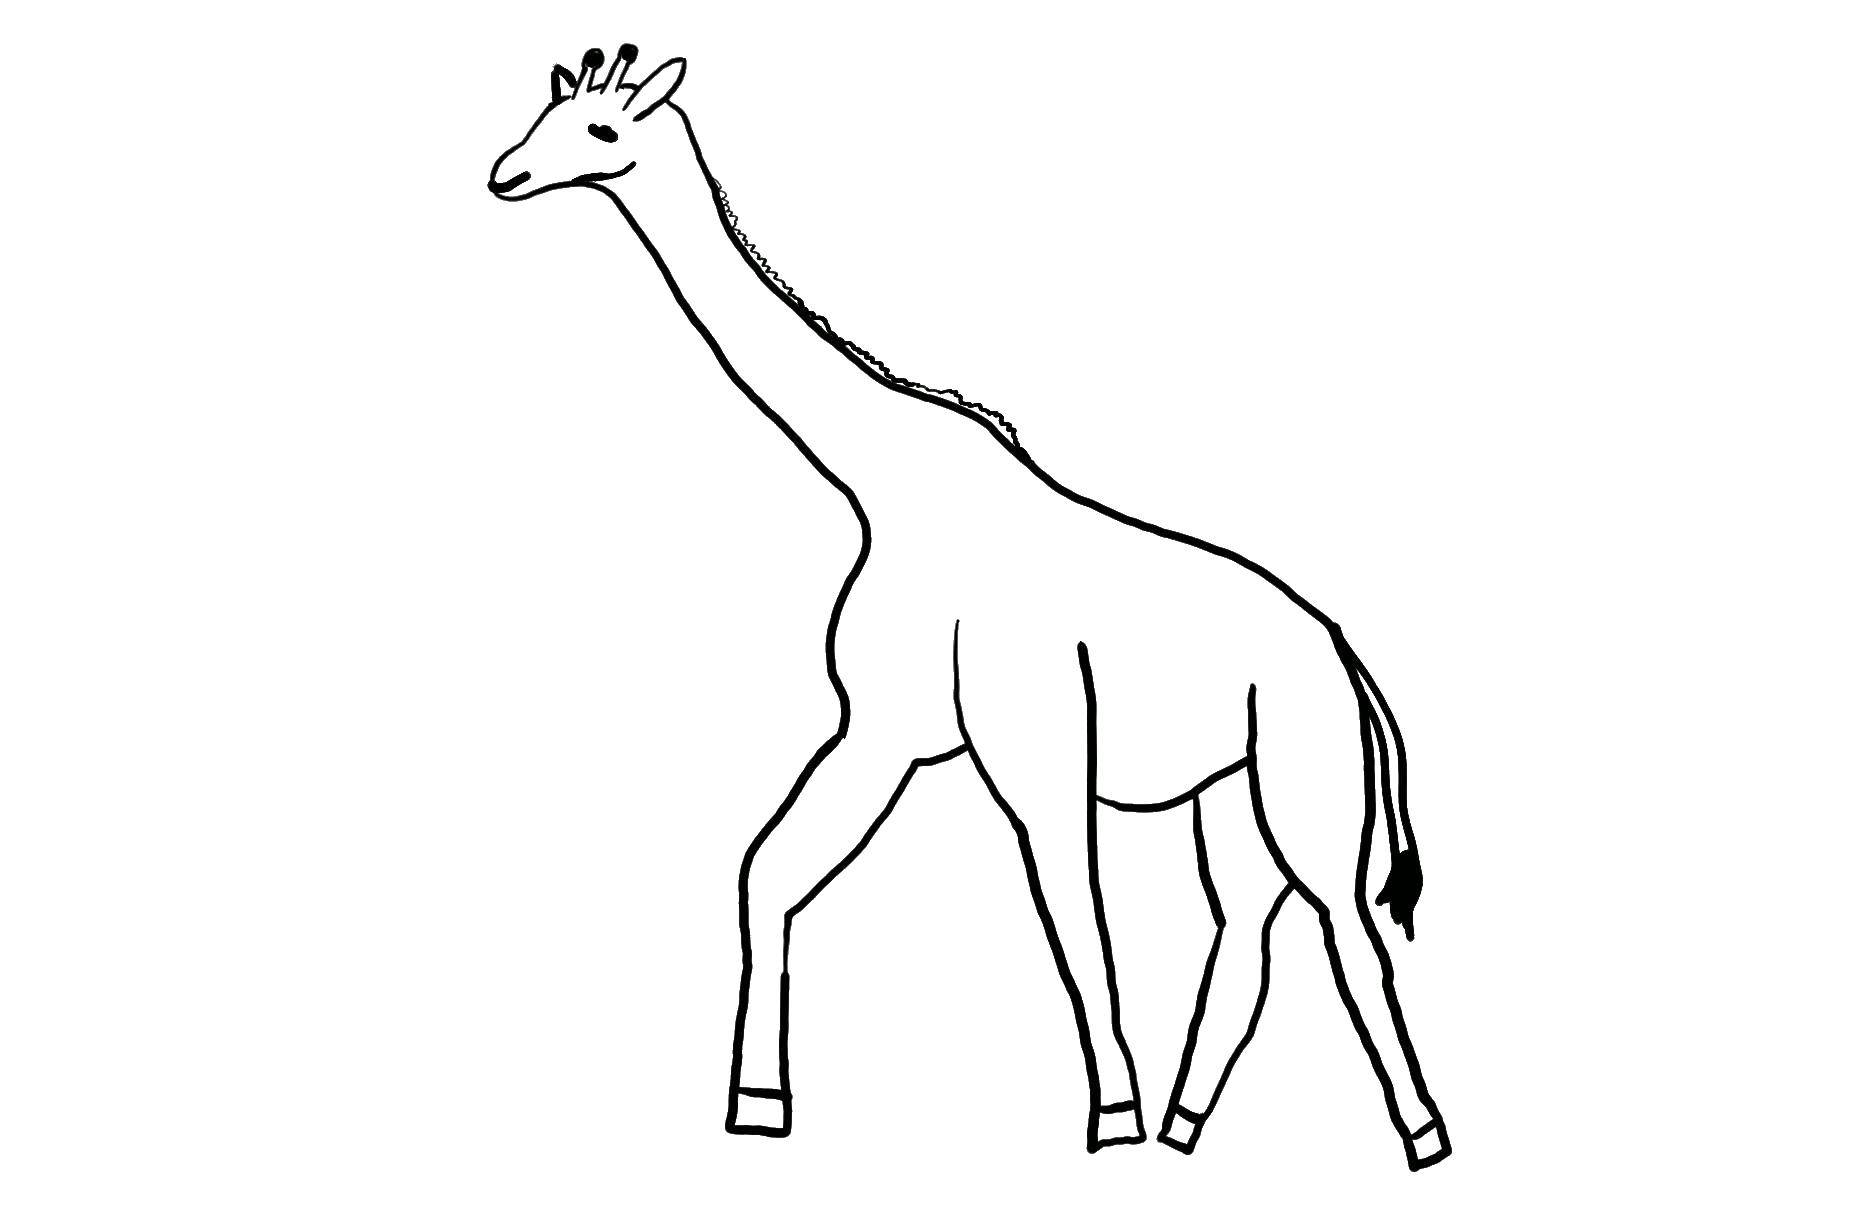 Опис: розмальовки  Жирафик. Категорія: Контур жирафа для вирізання. Теги:  Тварини, жираф.